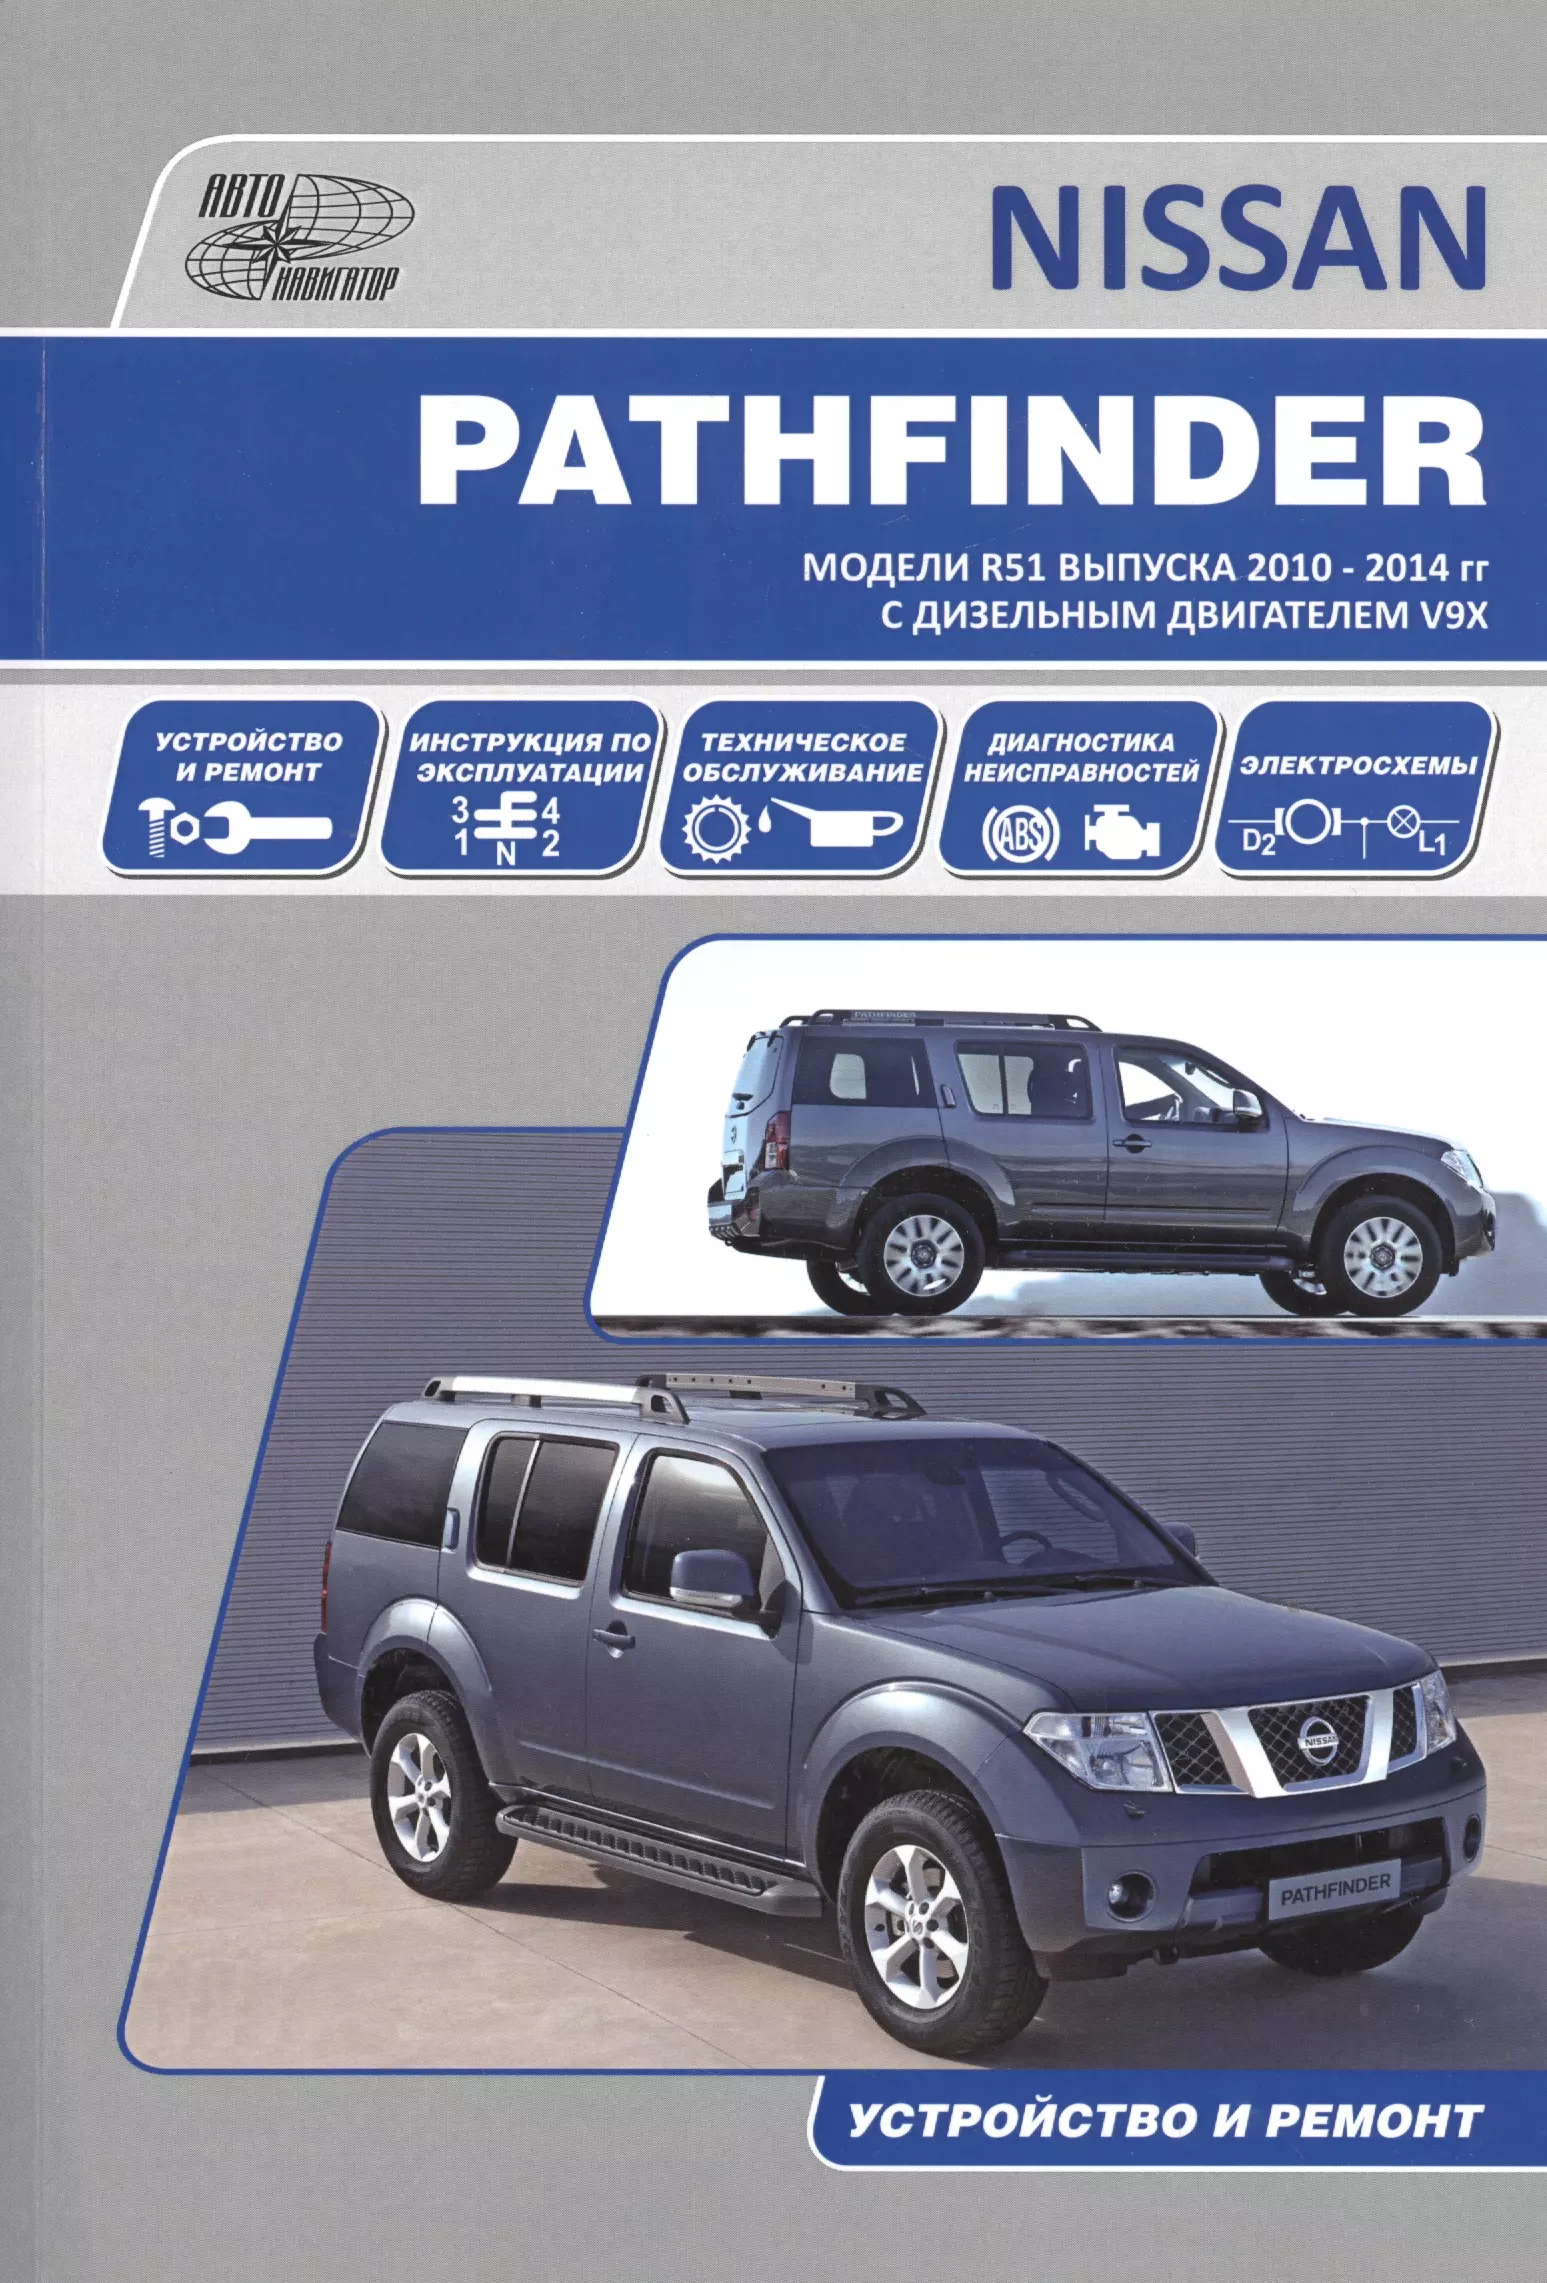 Nissan Pathfinder. Модели R51 выпуска 2010-2014 гг. с дизельным двигателем V9X. Руководство по эксплуатации, устройство, техническое обслуживание, ремонт 4 шт задние стекла и газовые стойки для nissan pathfinder r51 2005 2012